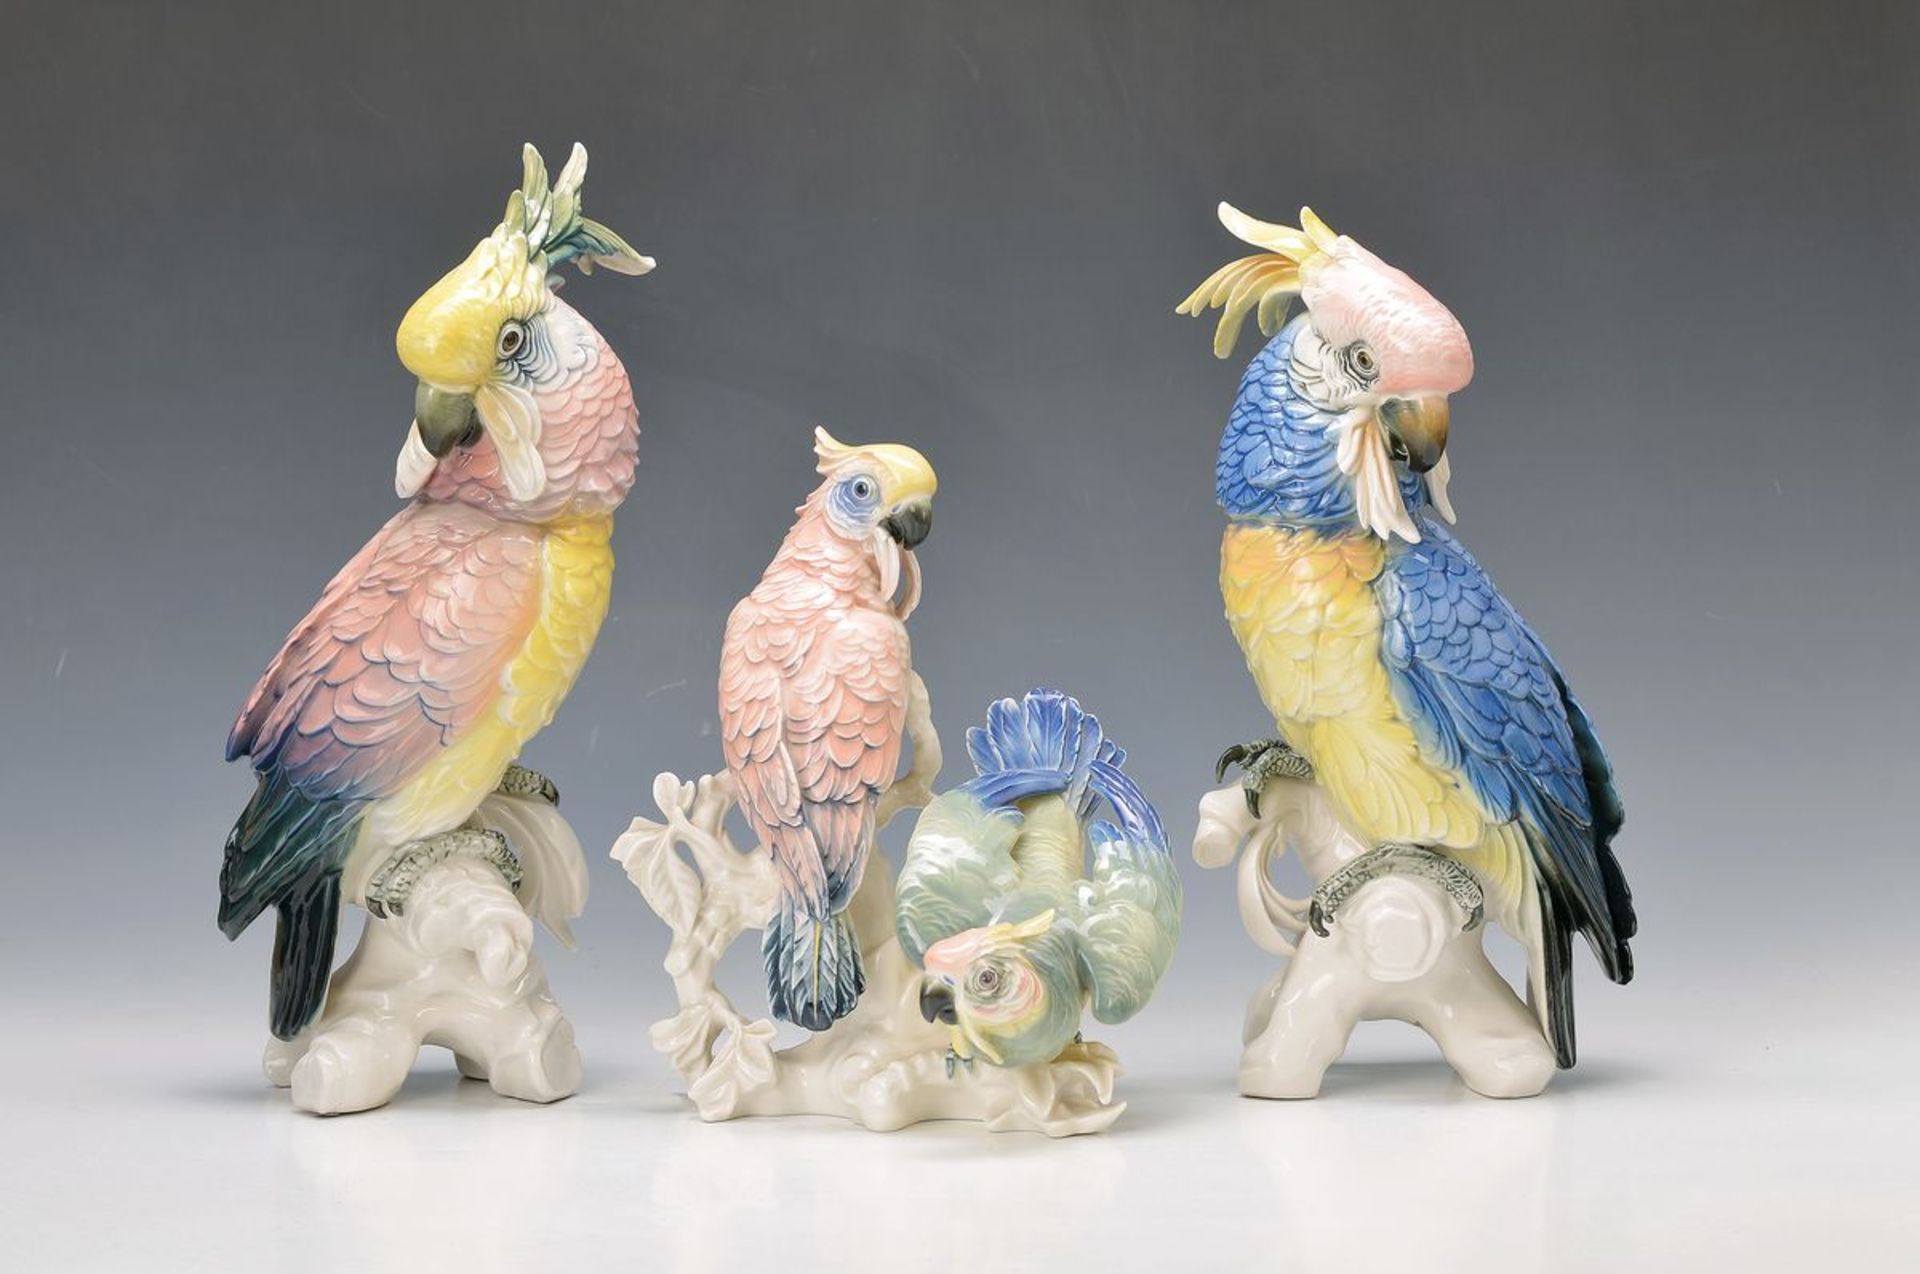 3 figurines, Ens, parrots, porcelain, painted in bright colors, H. 25-36 cm